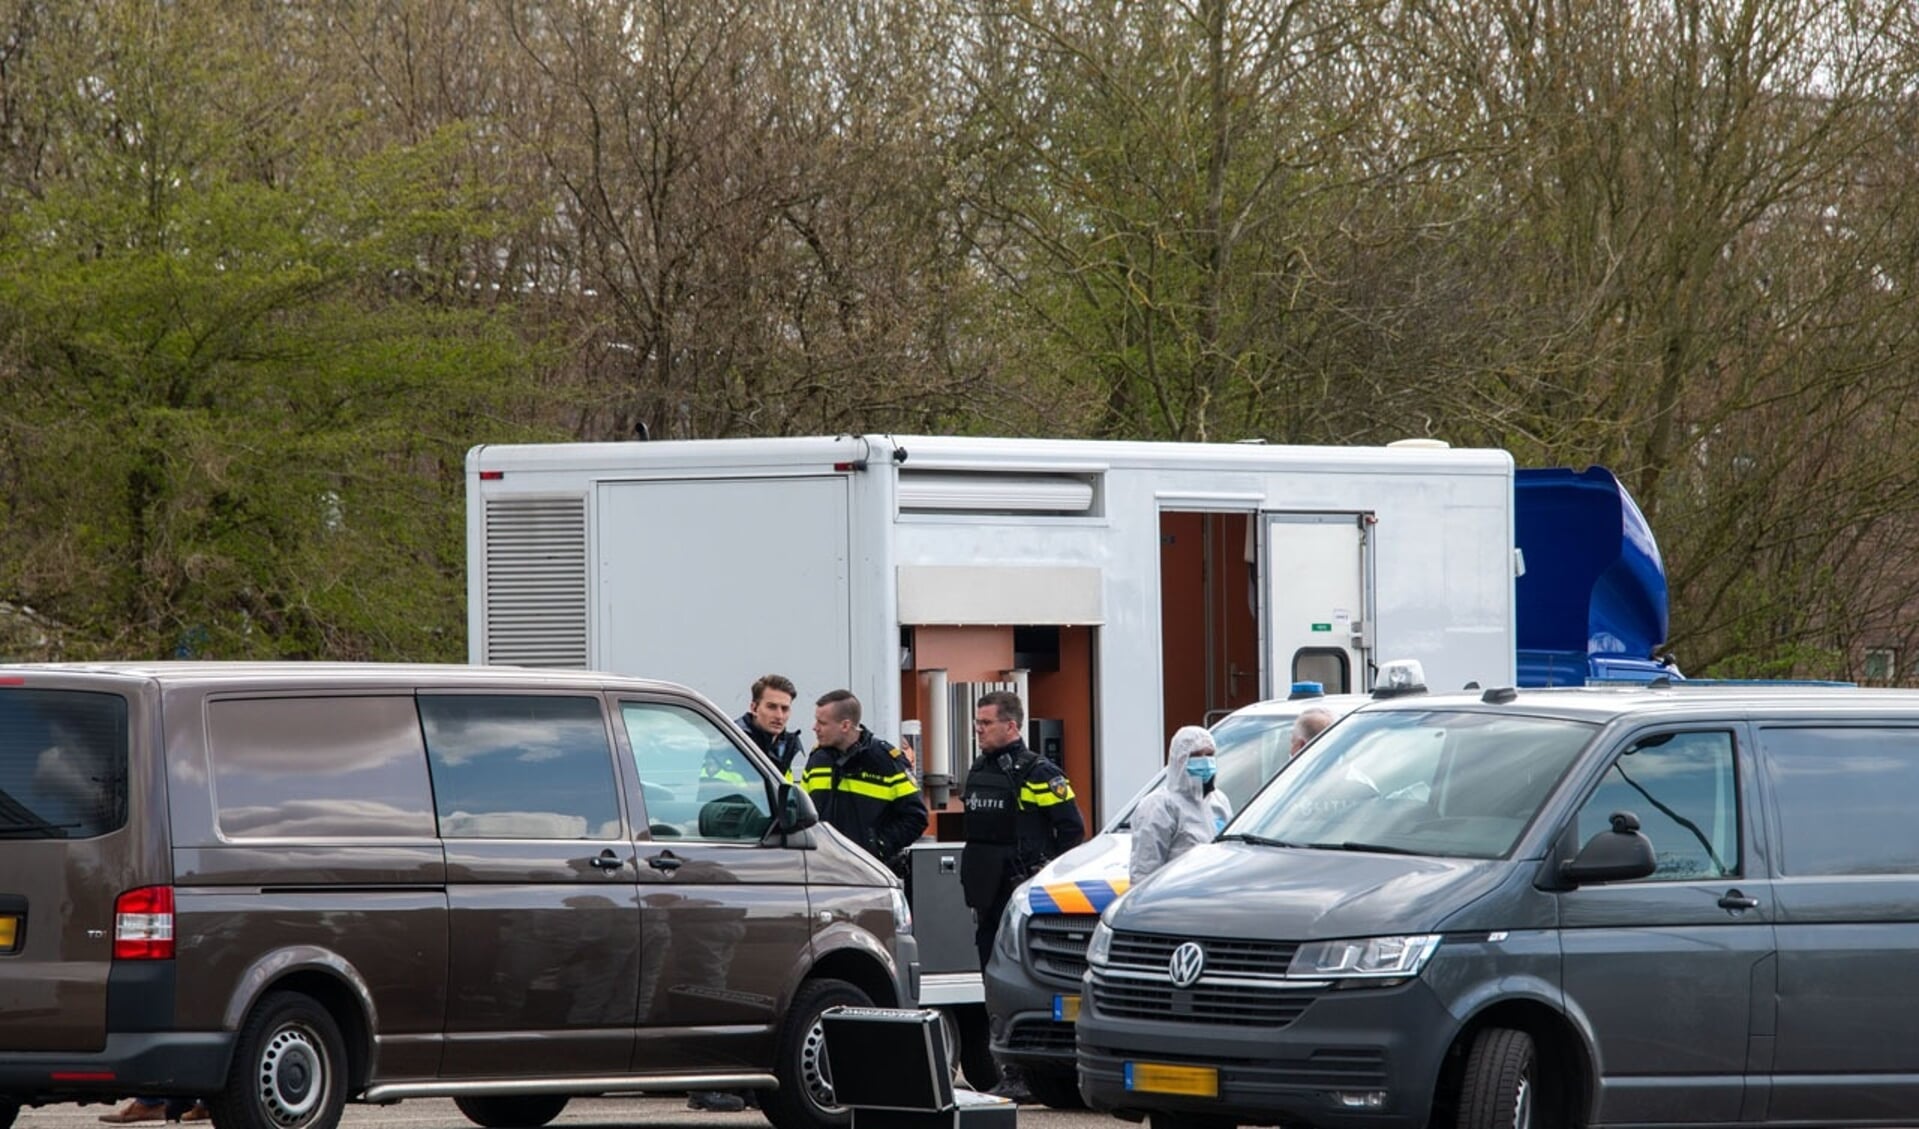  De moord op 1 april op de parkeerplaats van voetbalvereniging Overbos, is een dieptepunt in een langdurige periode van overlast op die plek. 